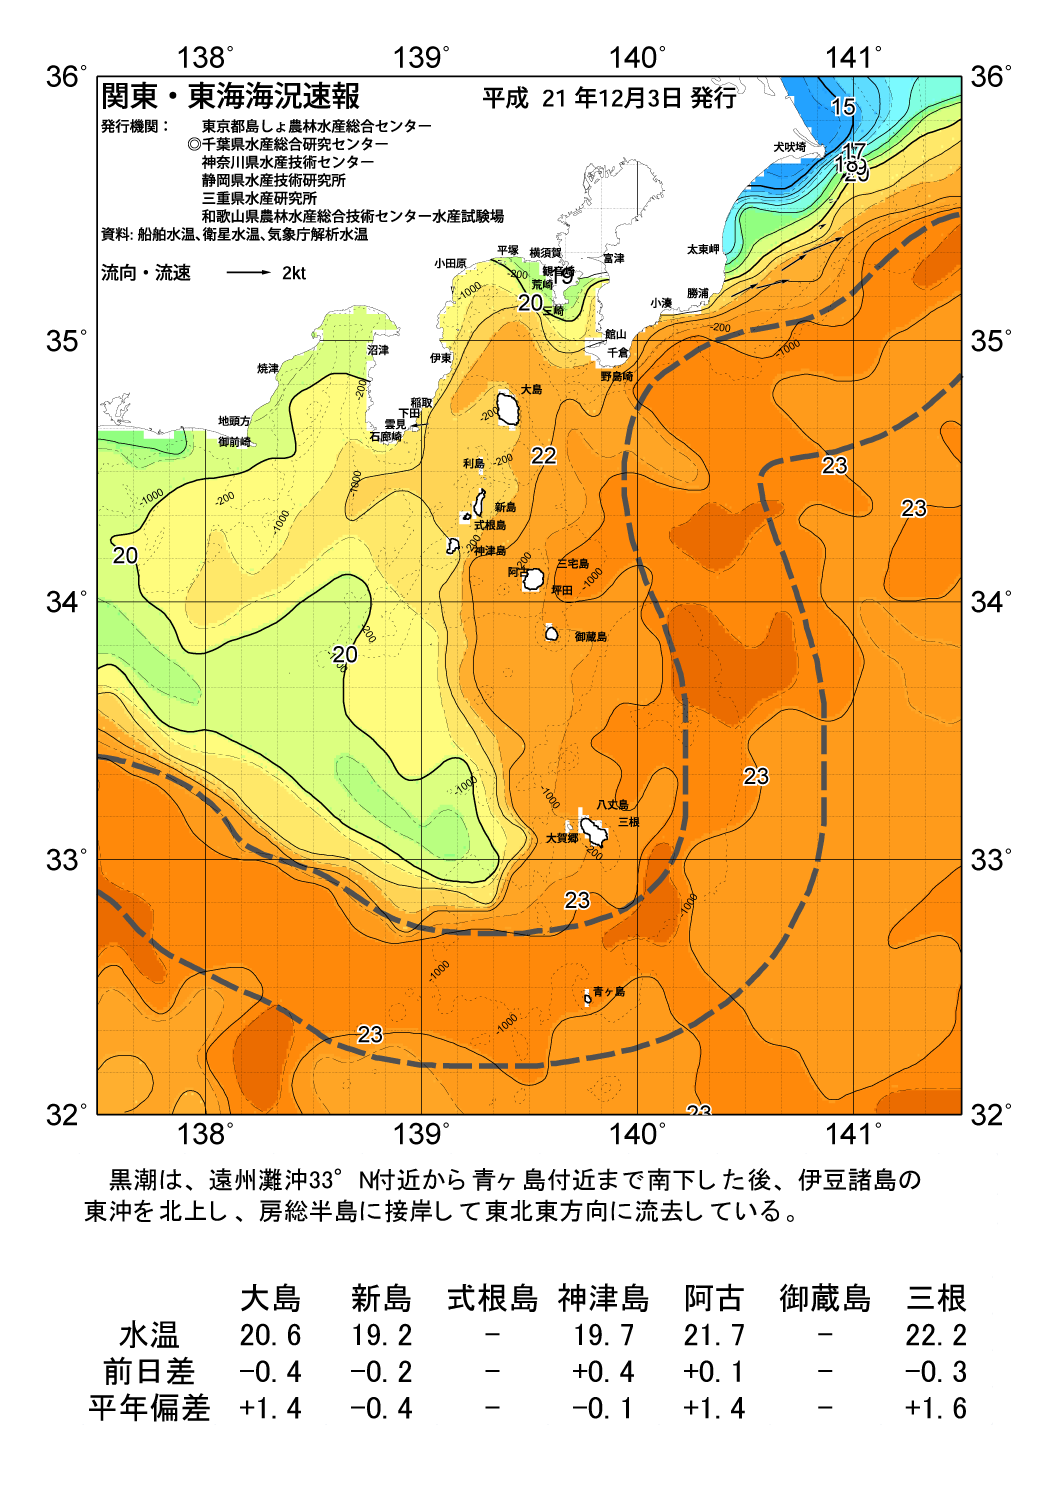 海の天気図09年12月3日 東京都島しょ農林水産総合センター